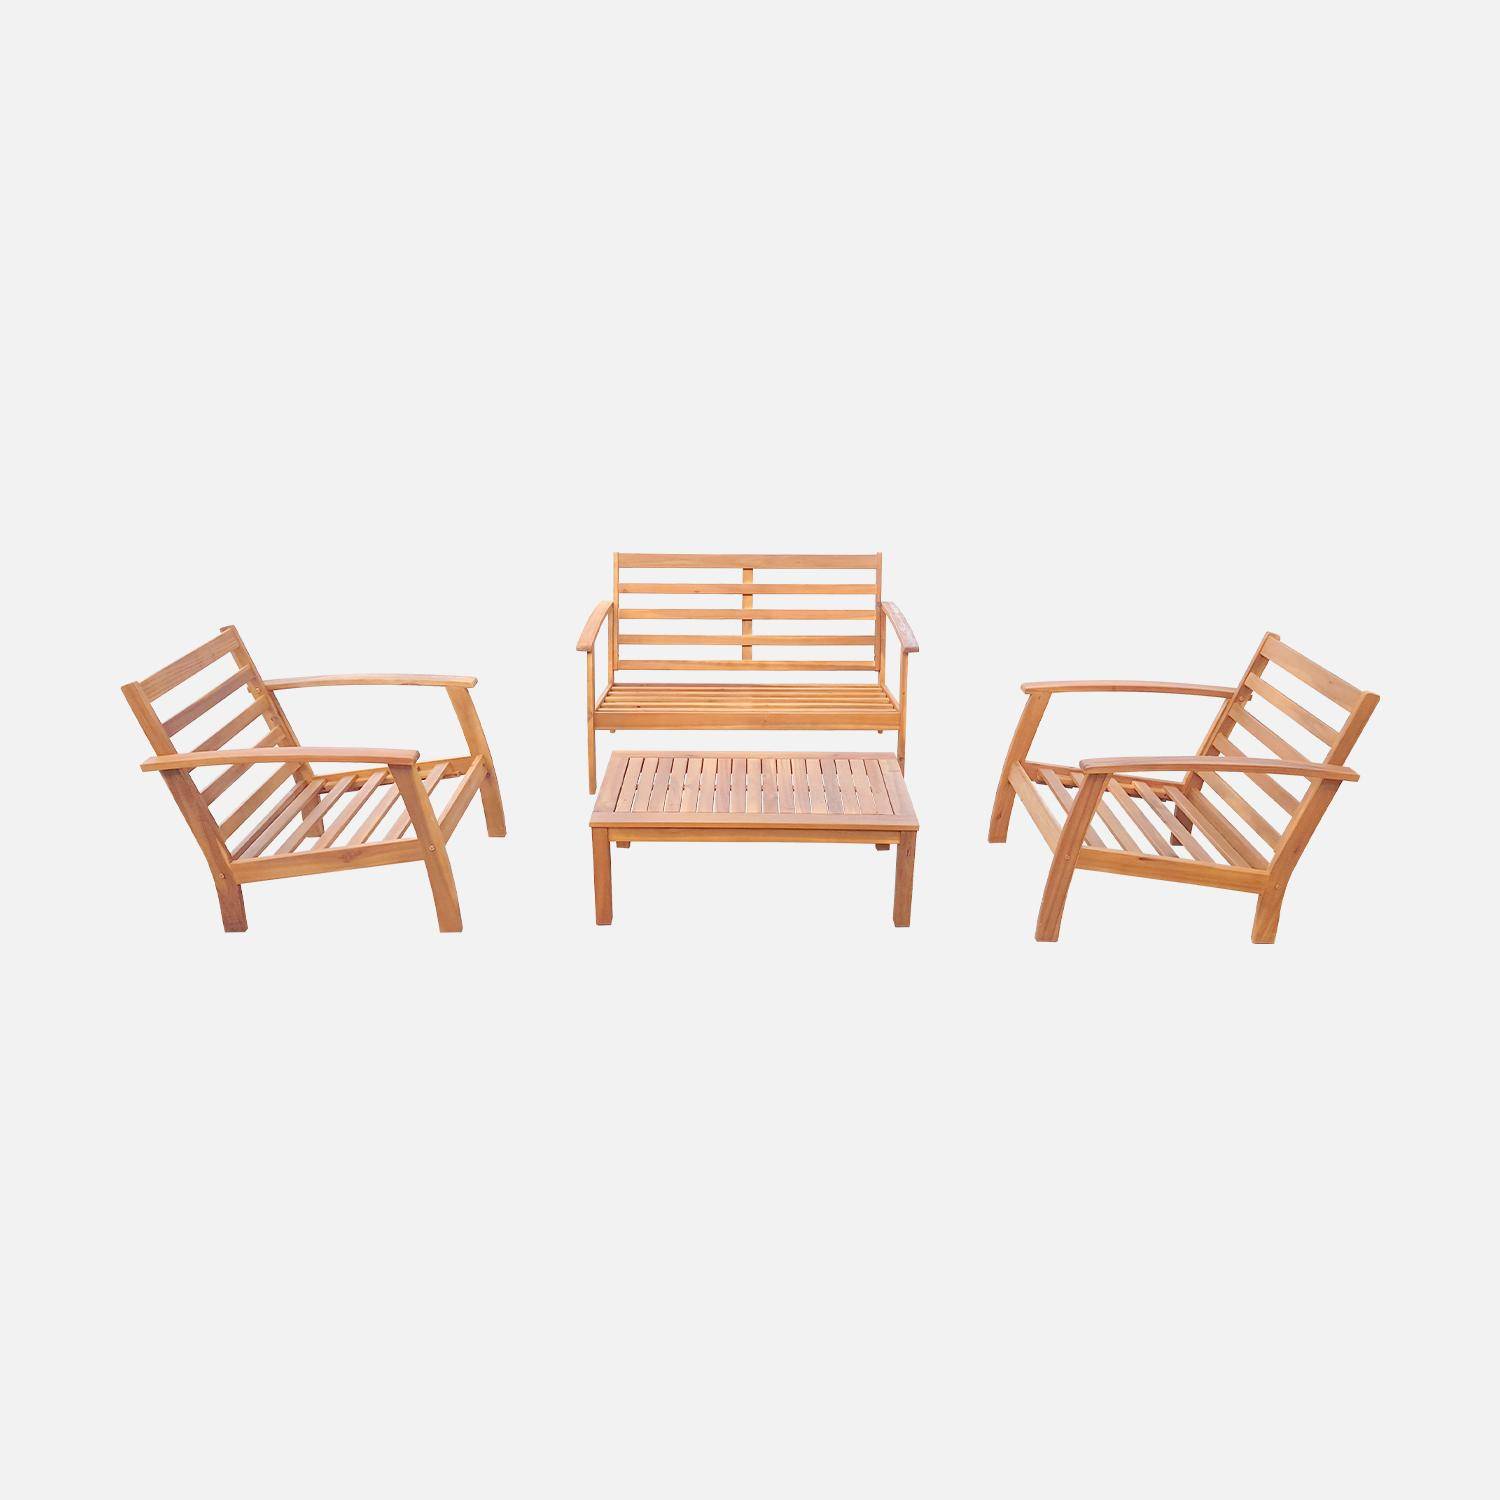 Salon de jardin en bois 4 places - Ushuaïa - Coussins Savane, canapé, fauteuils et table basse en acacia, design Photo5